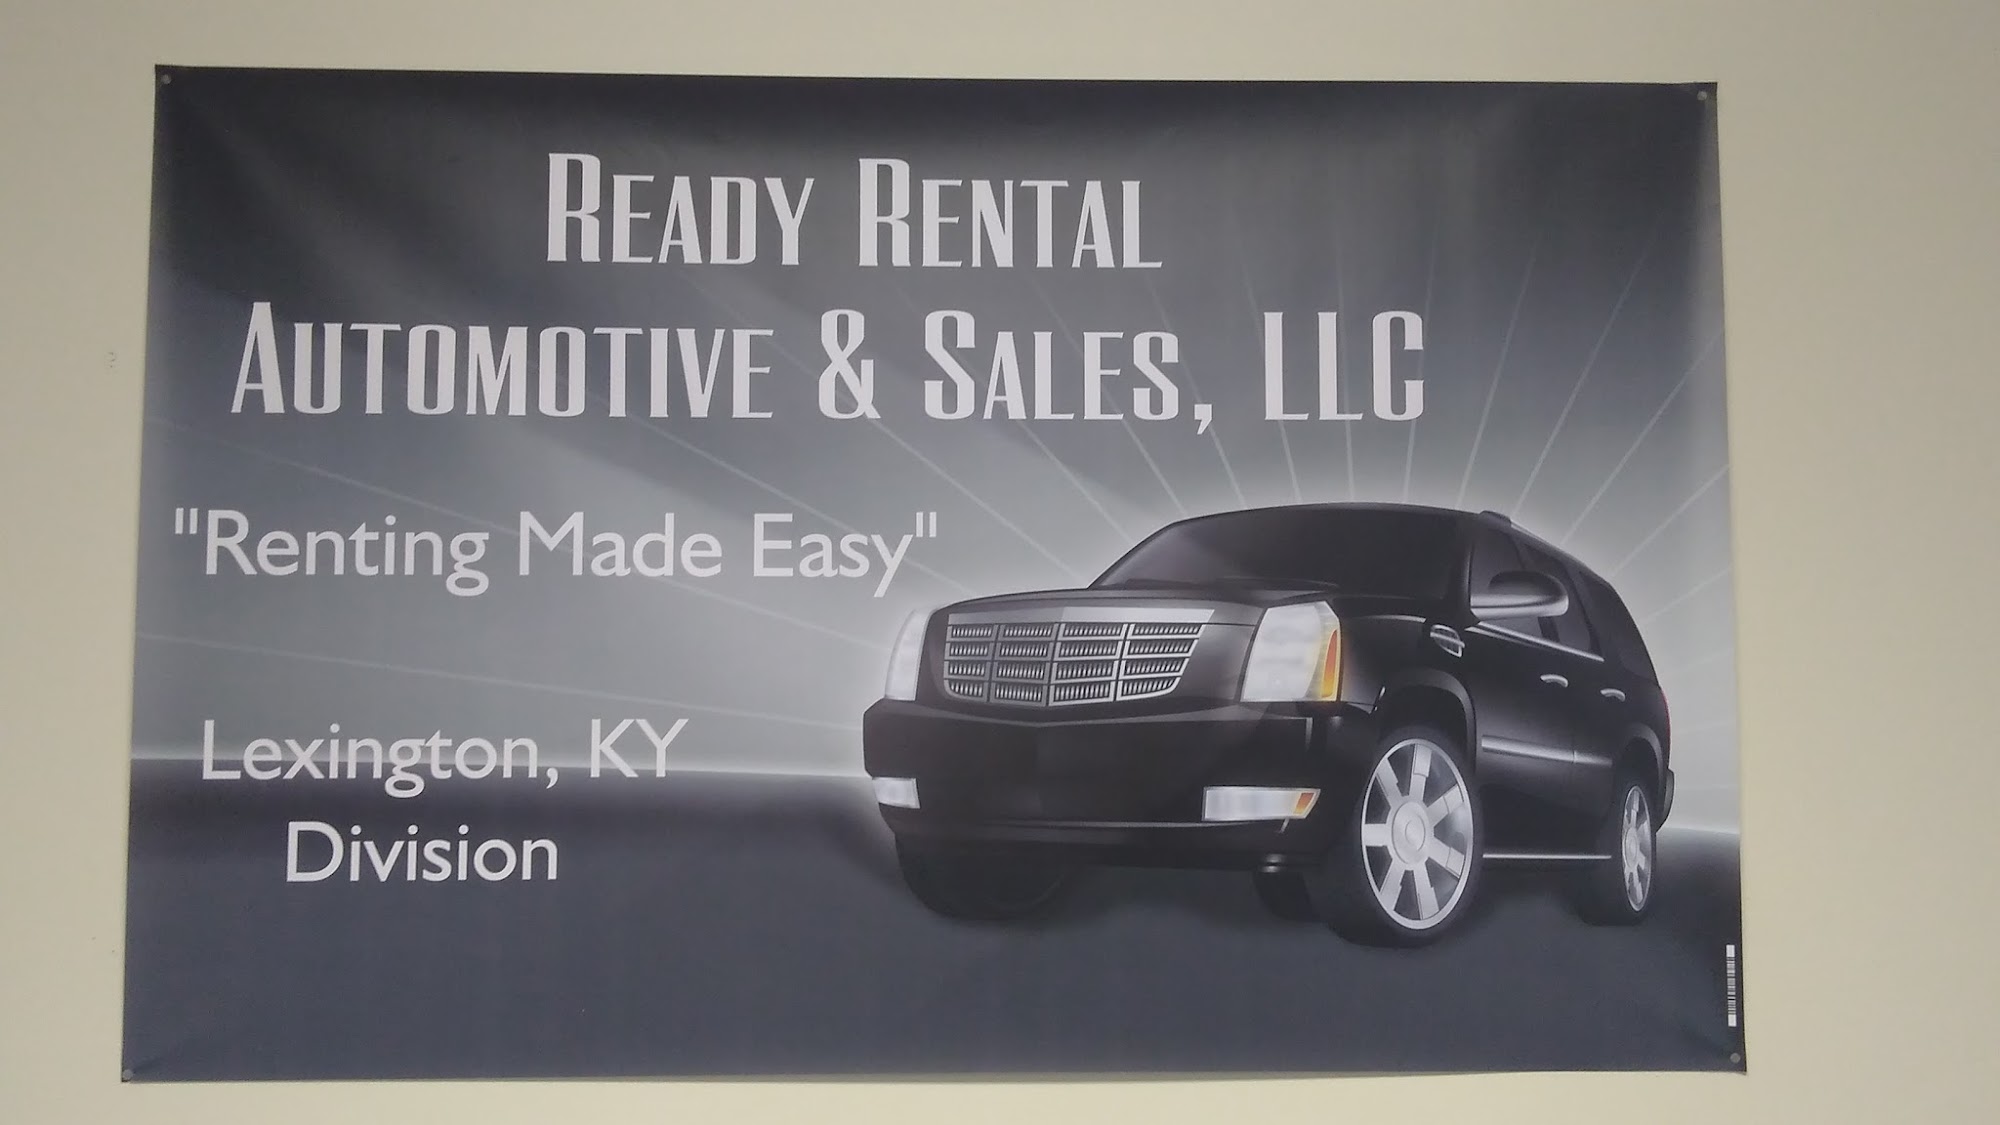 Ready Rental Automotive & Auto Sales, LLC